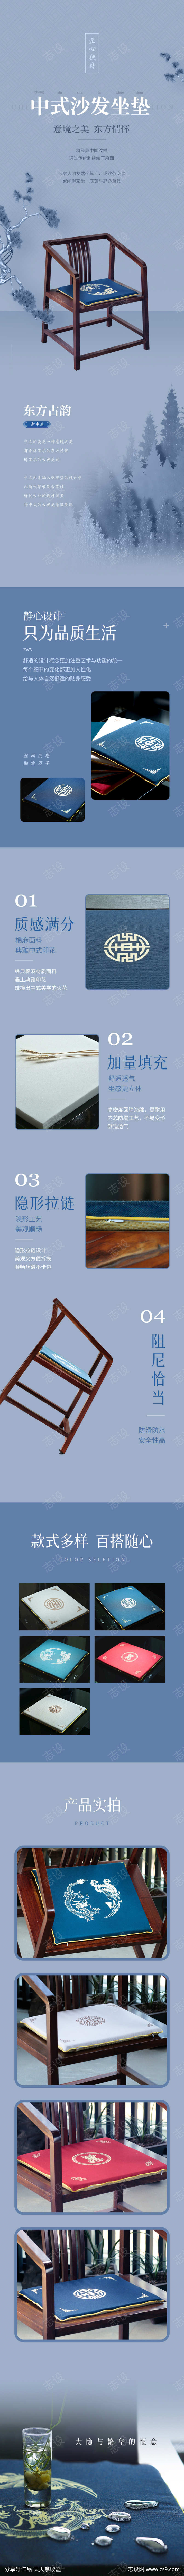 中式茶椅坐垫详情页